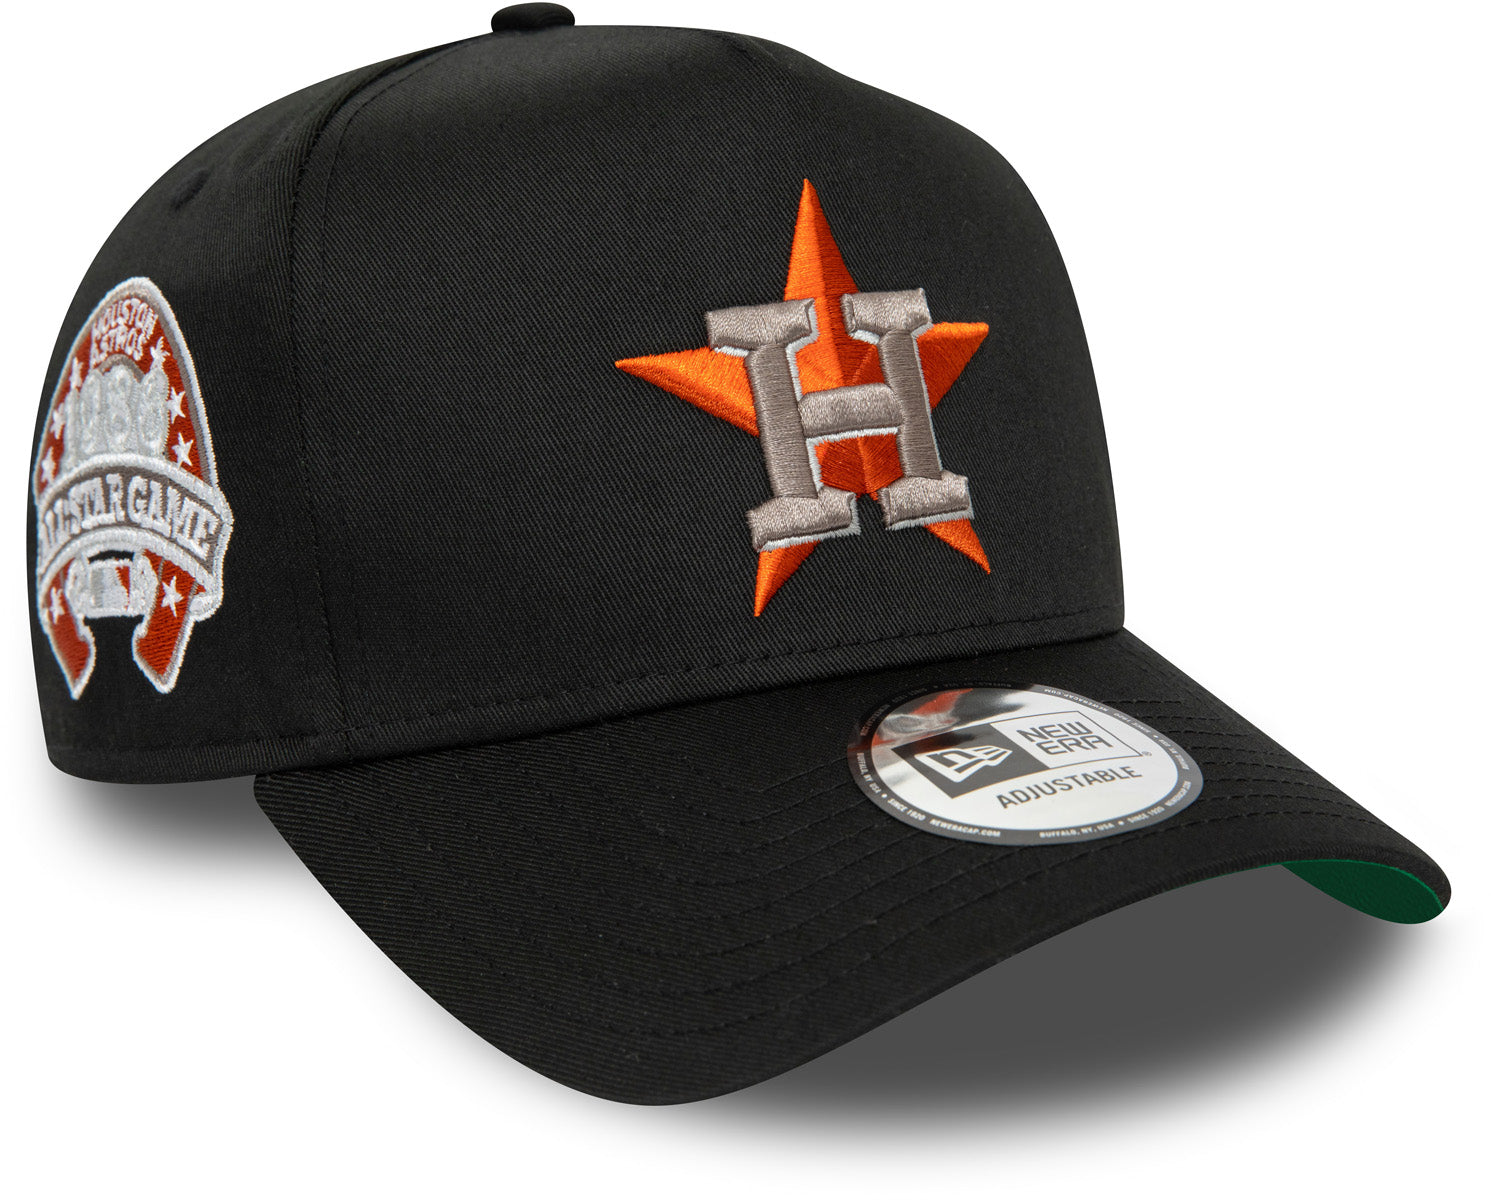 Houston Astros cap